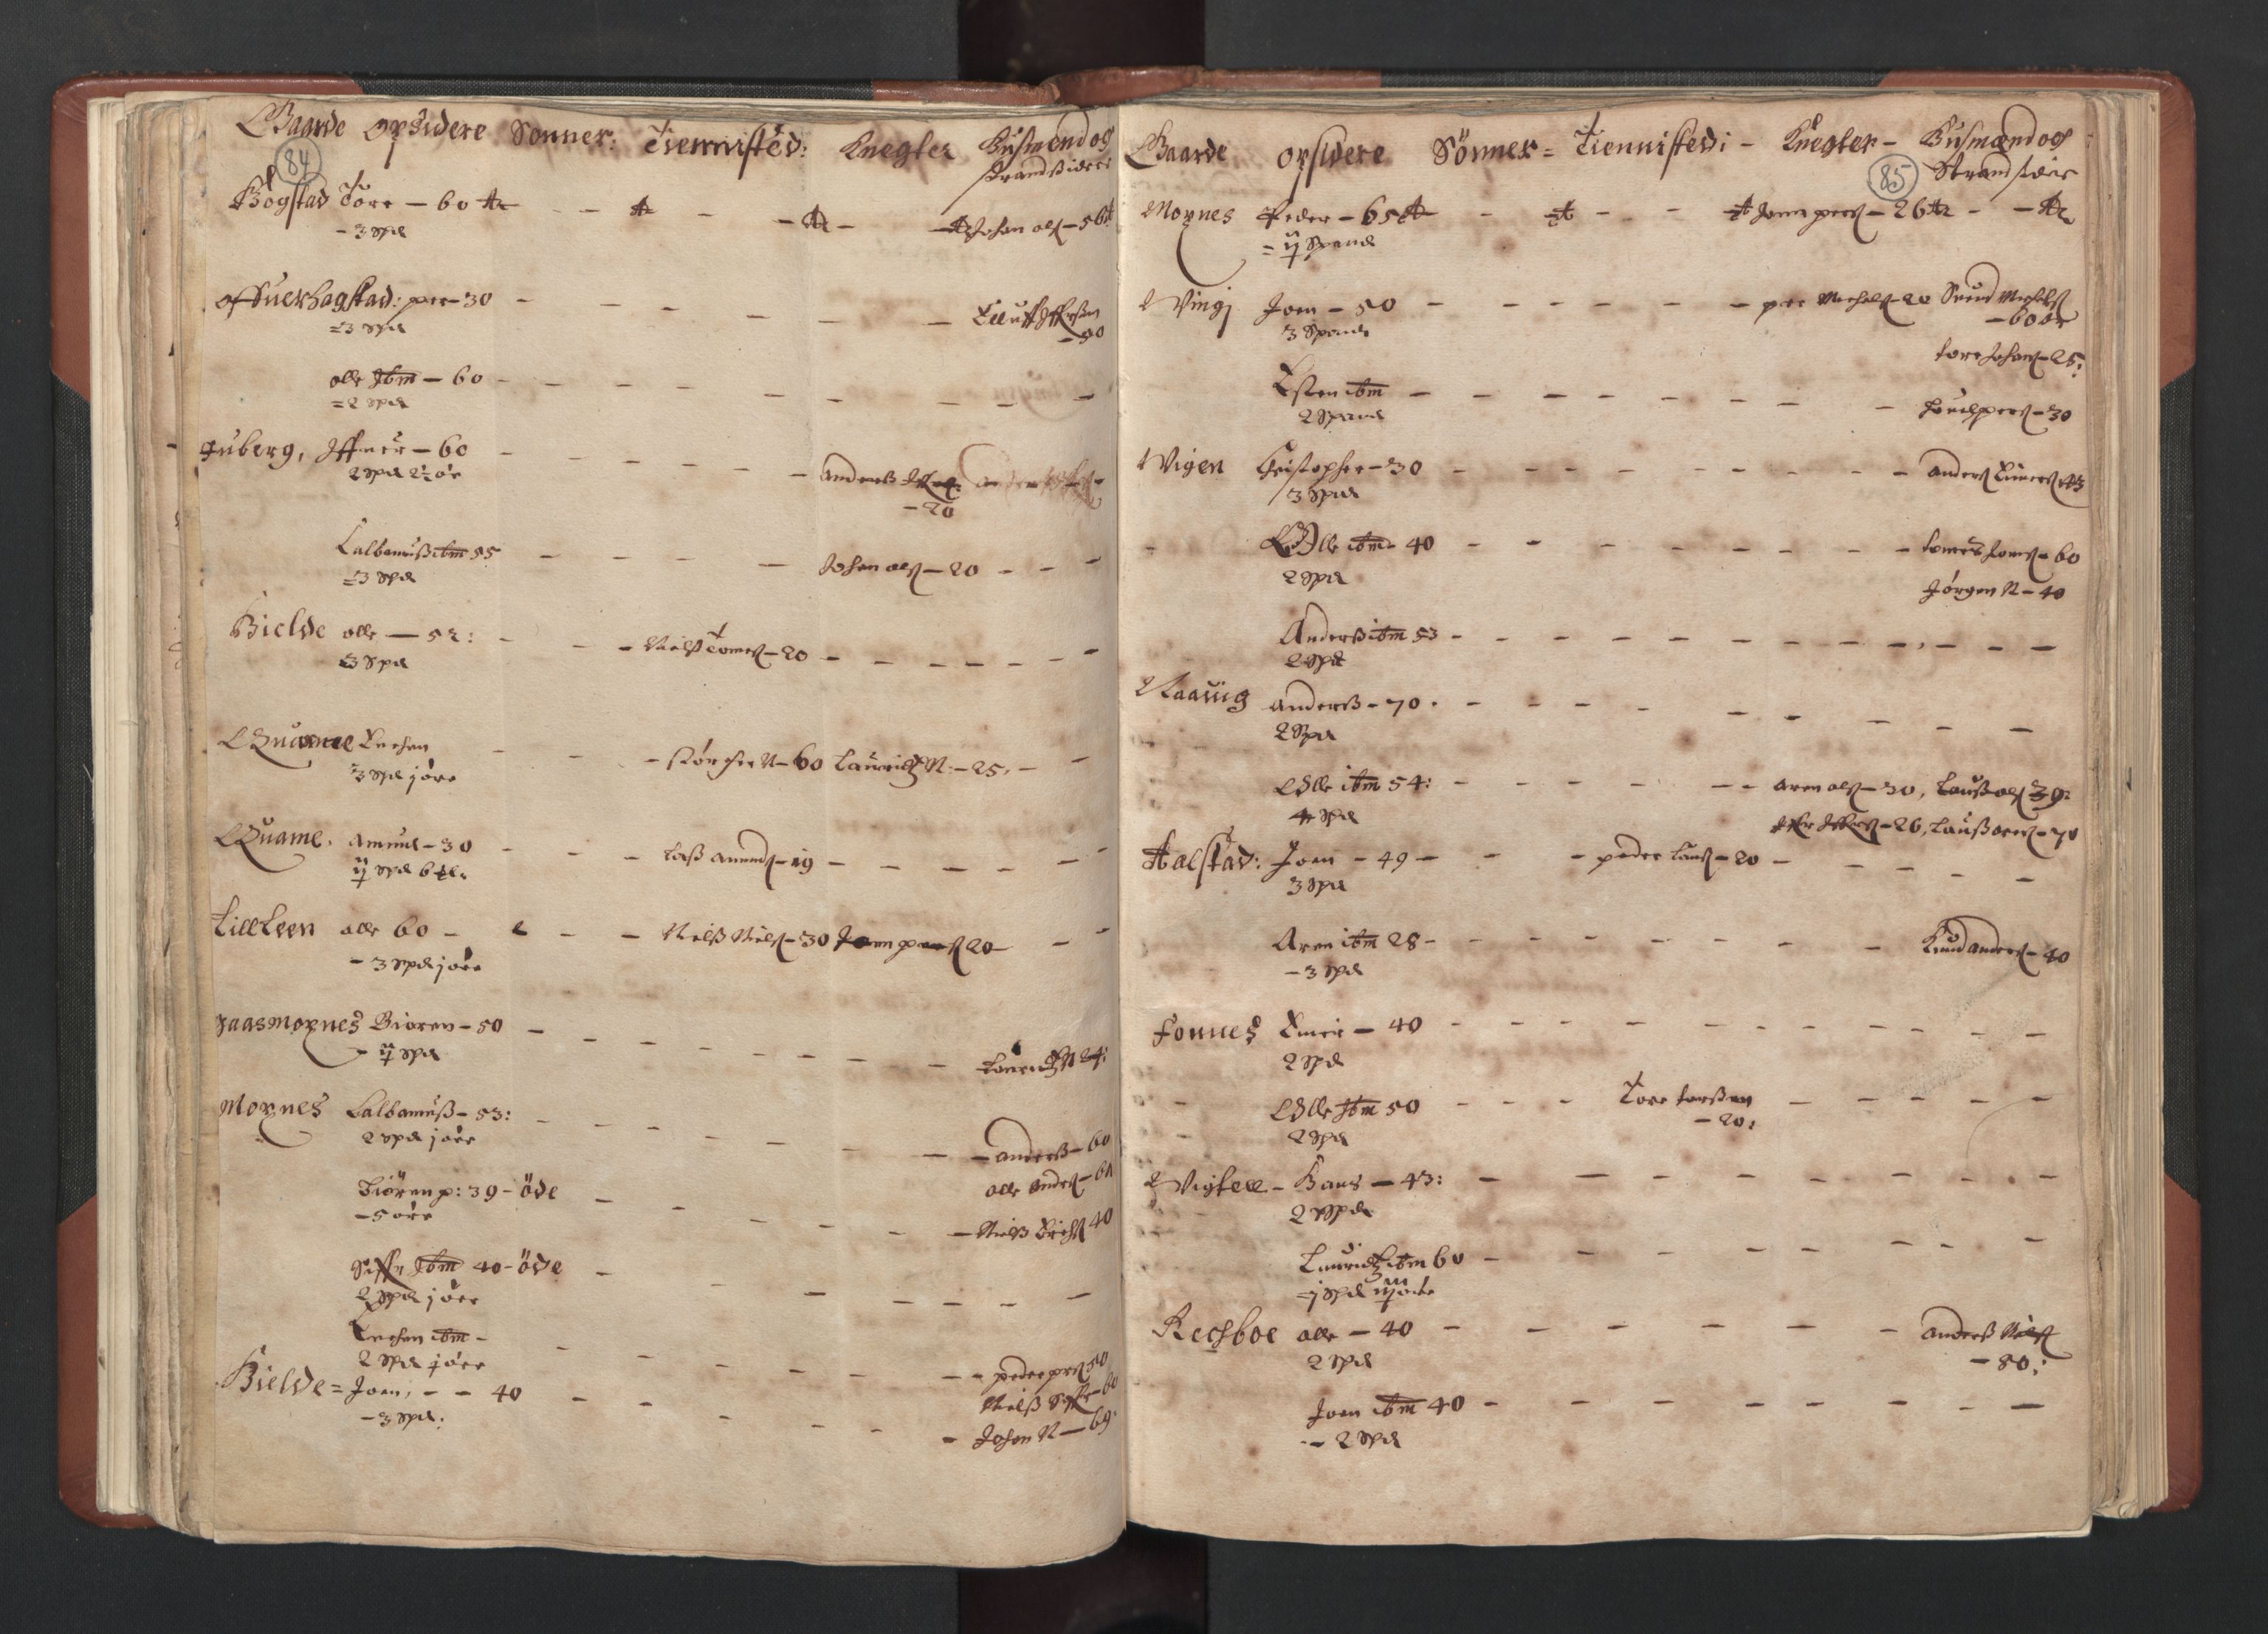 RA, Bailiff's Census 1664-1666, no. 19: Fosen fogderi, Inderøy fogderi, Selbu fogderi, Namdal fogderi and Stjørdal fogderi, 1664-1665, p. 84-85